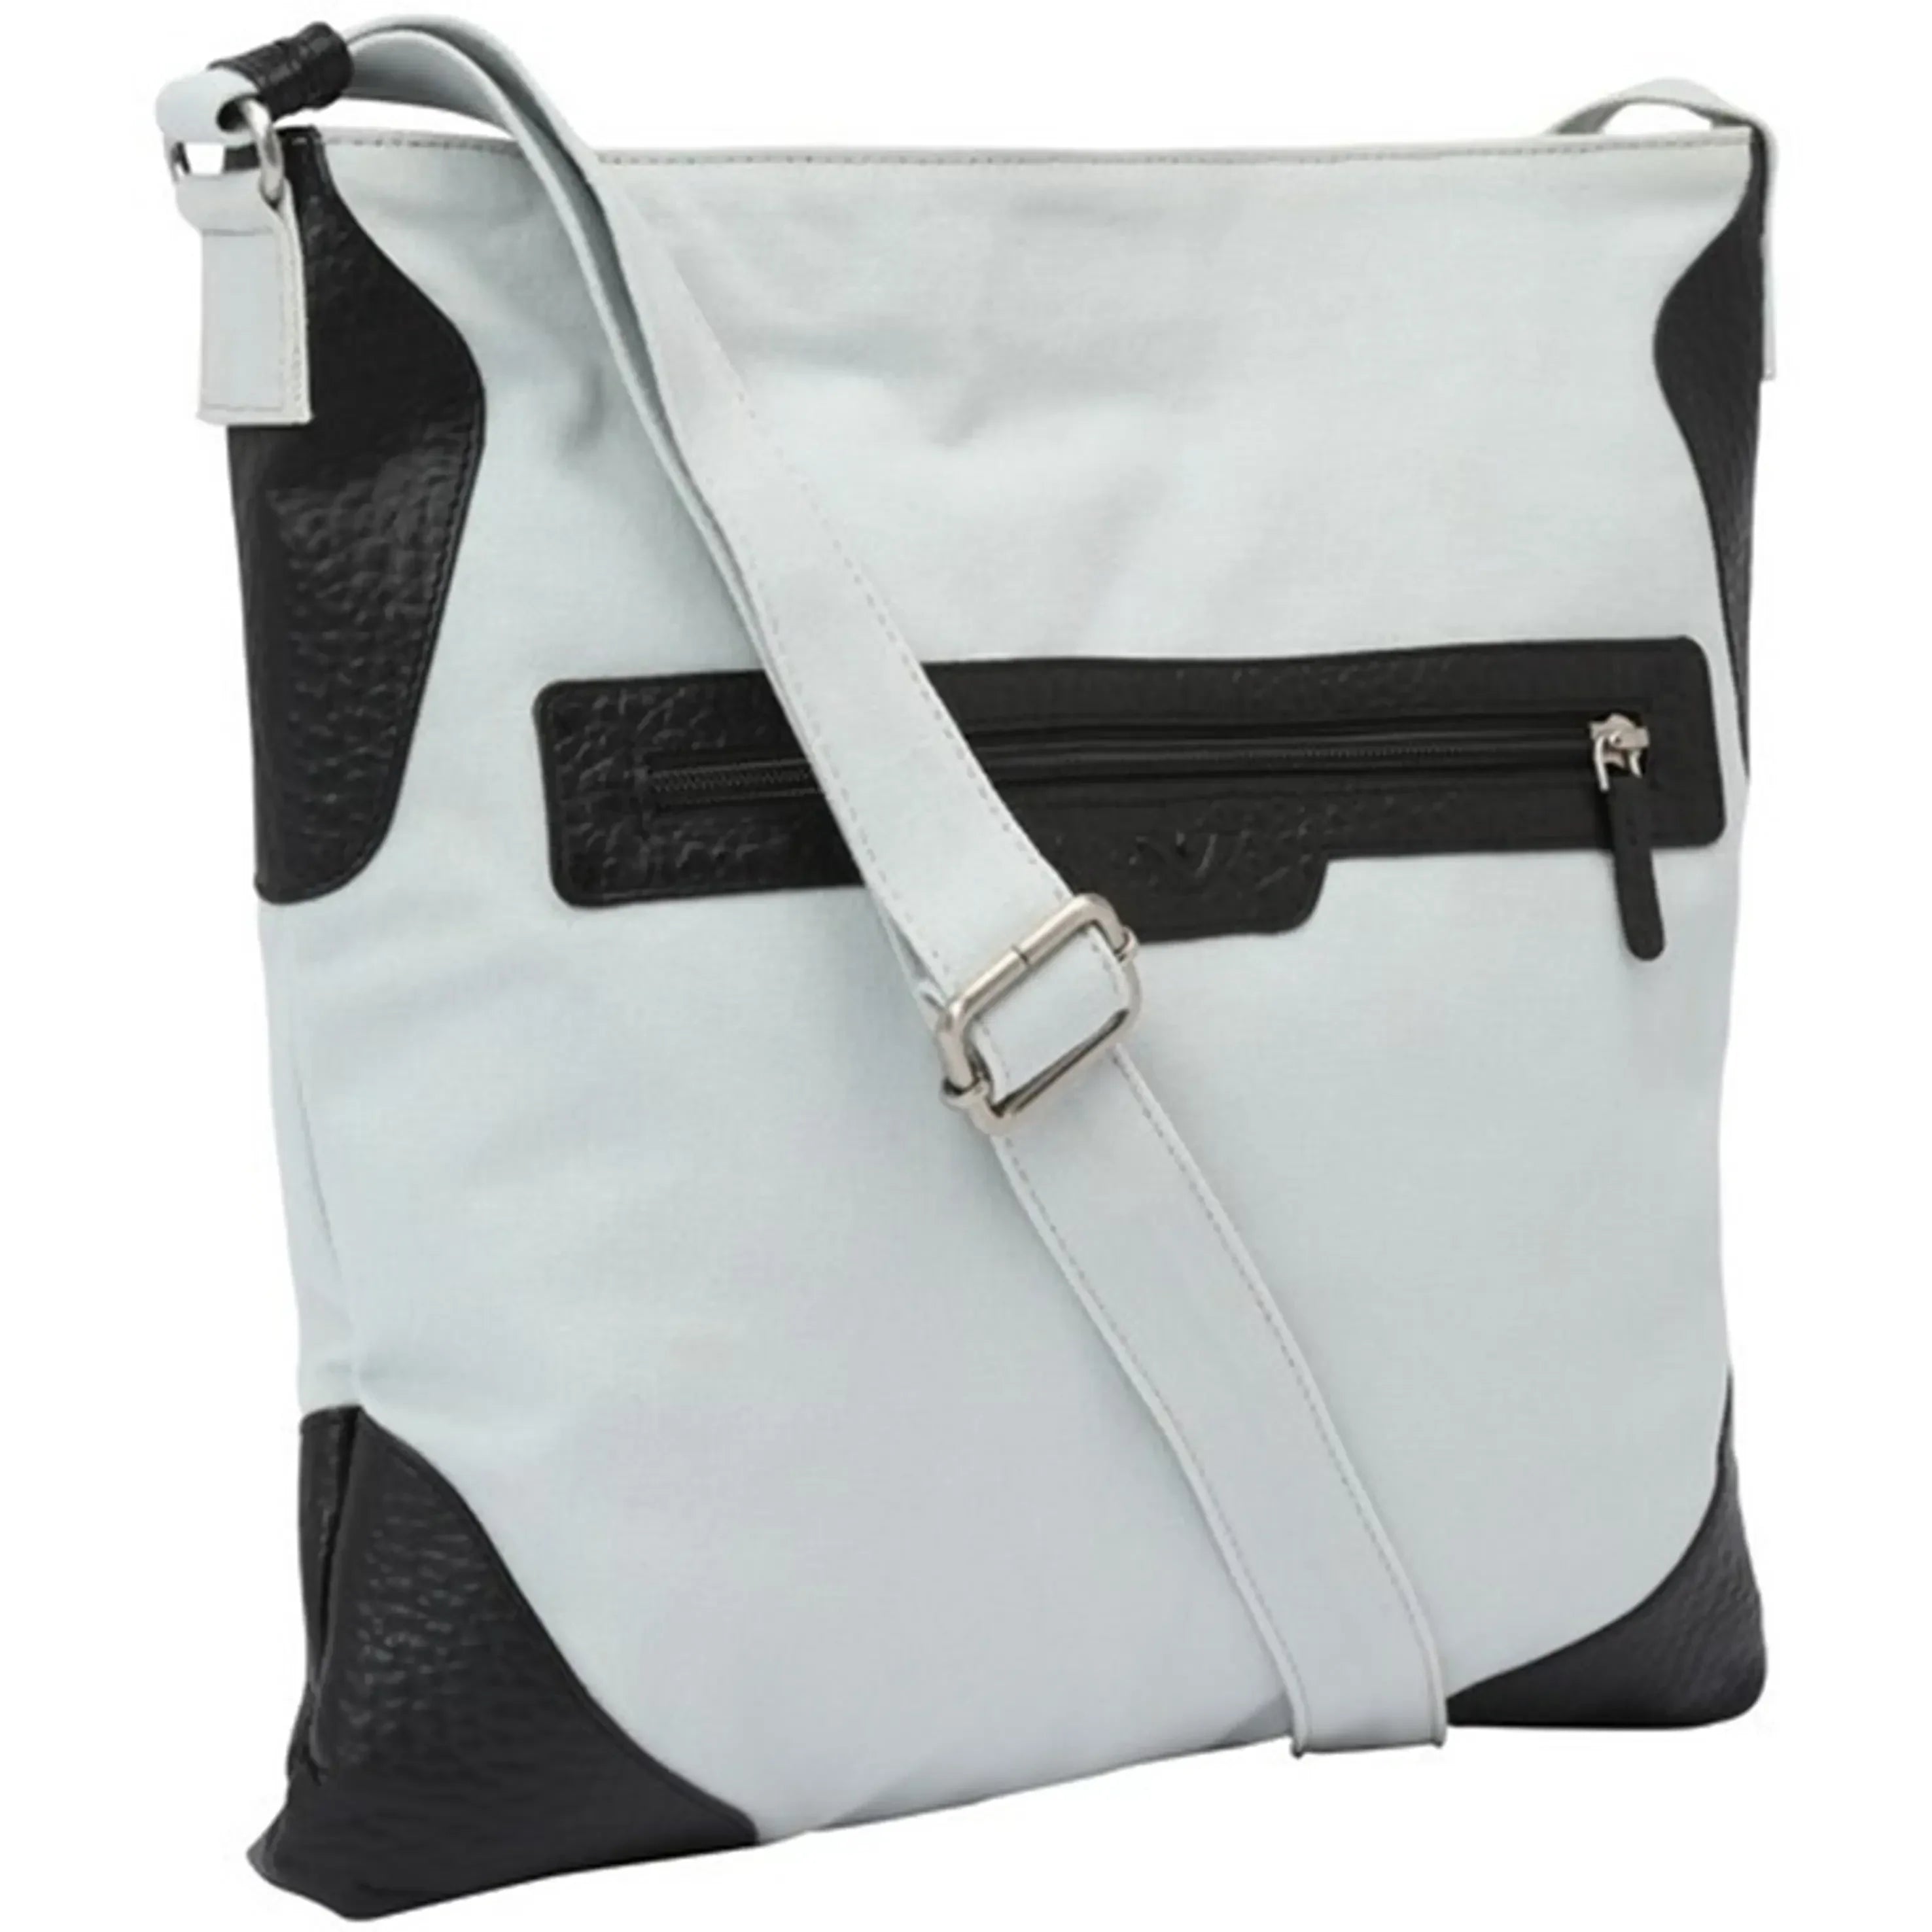 VOi-Design Sportivo Ria shoulder bag 34 cm - Black